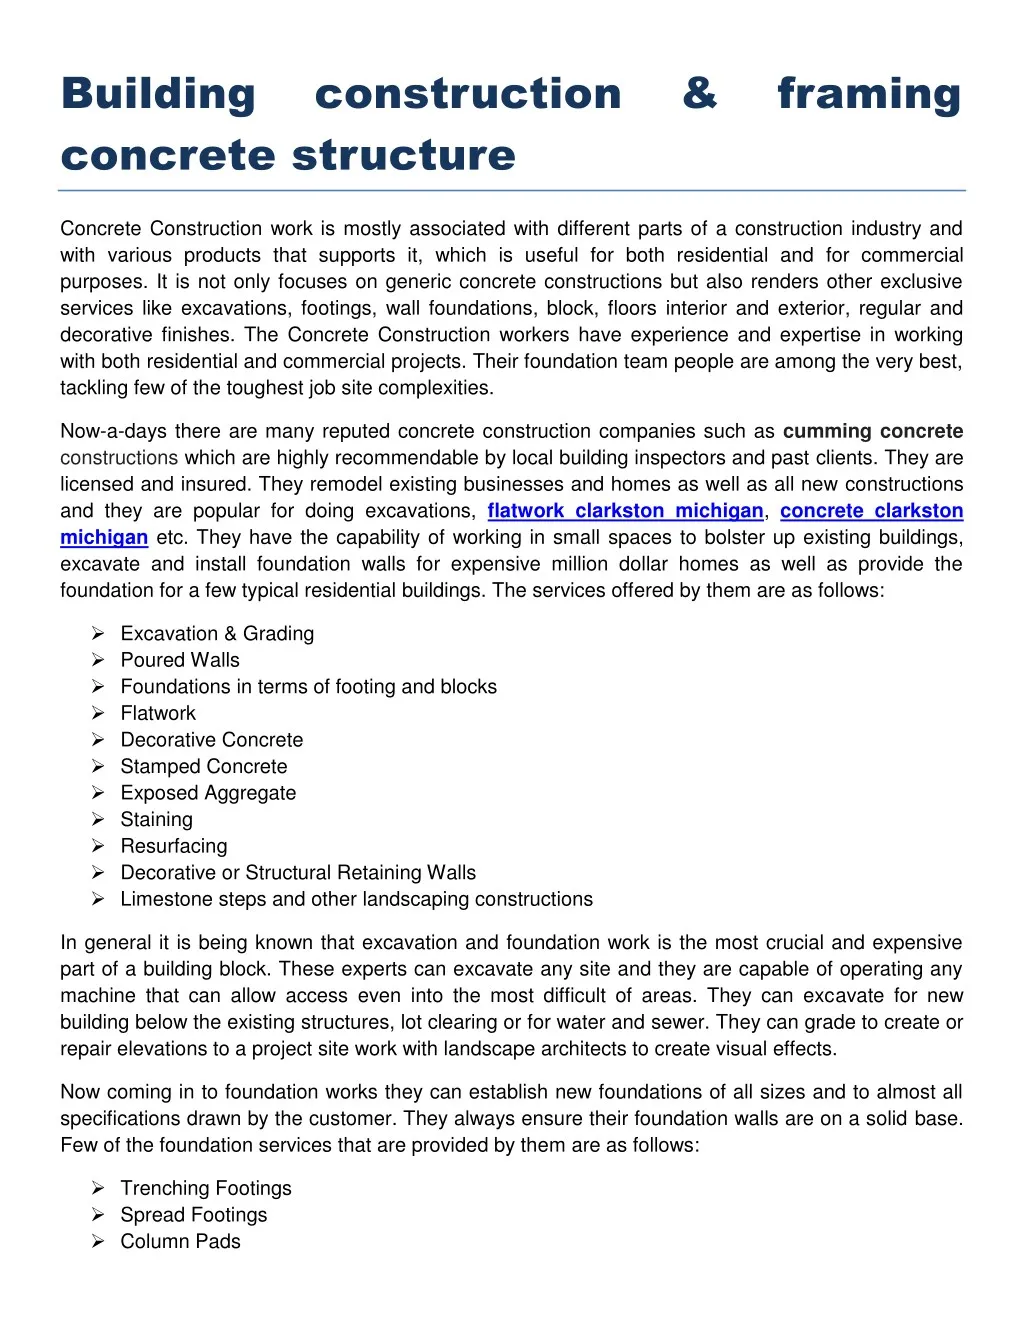 building concrete structure